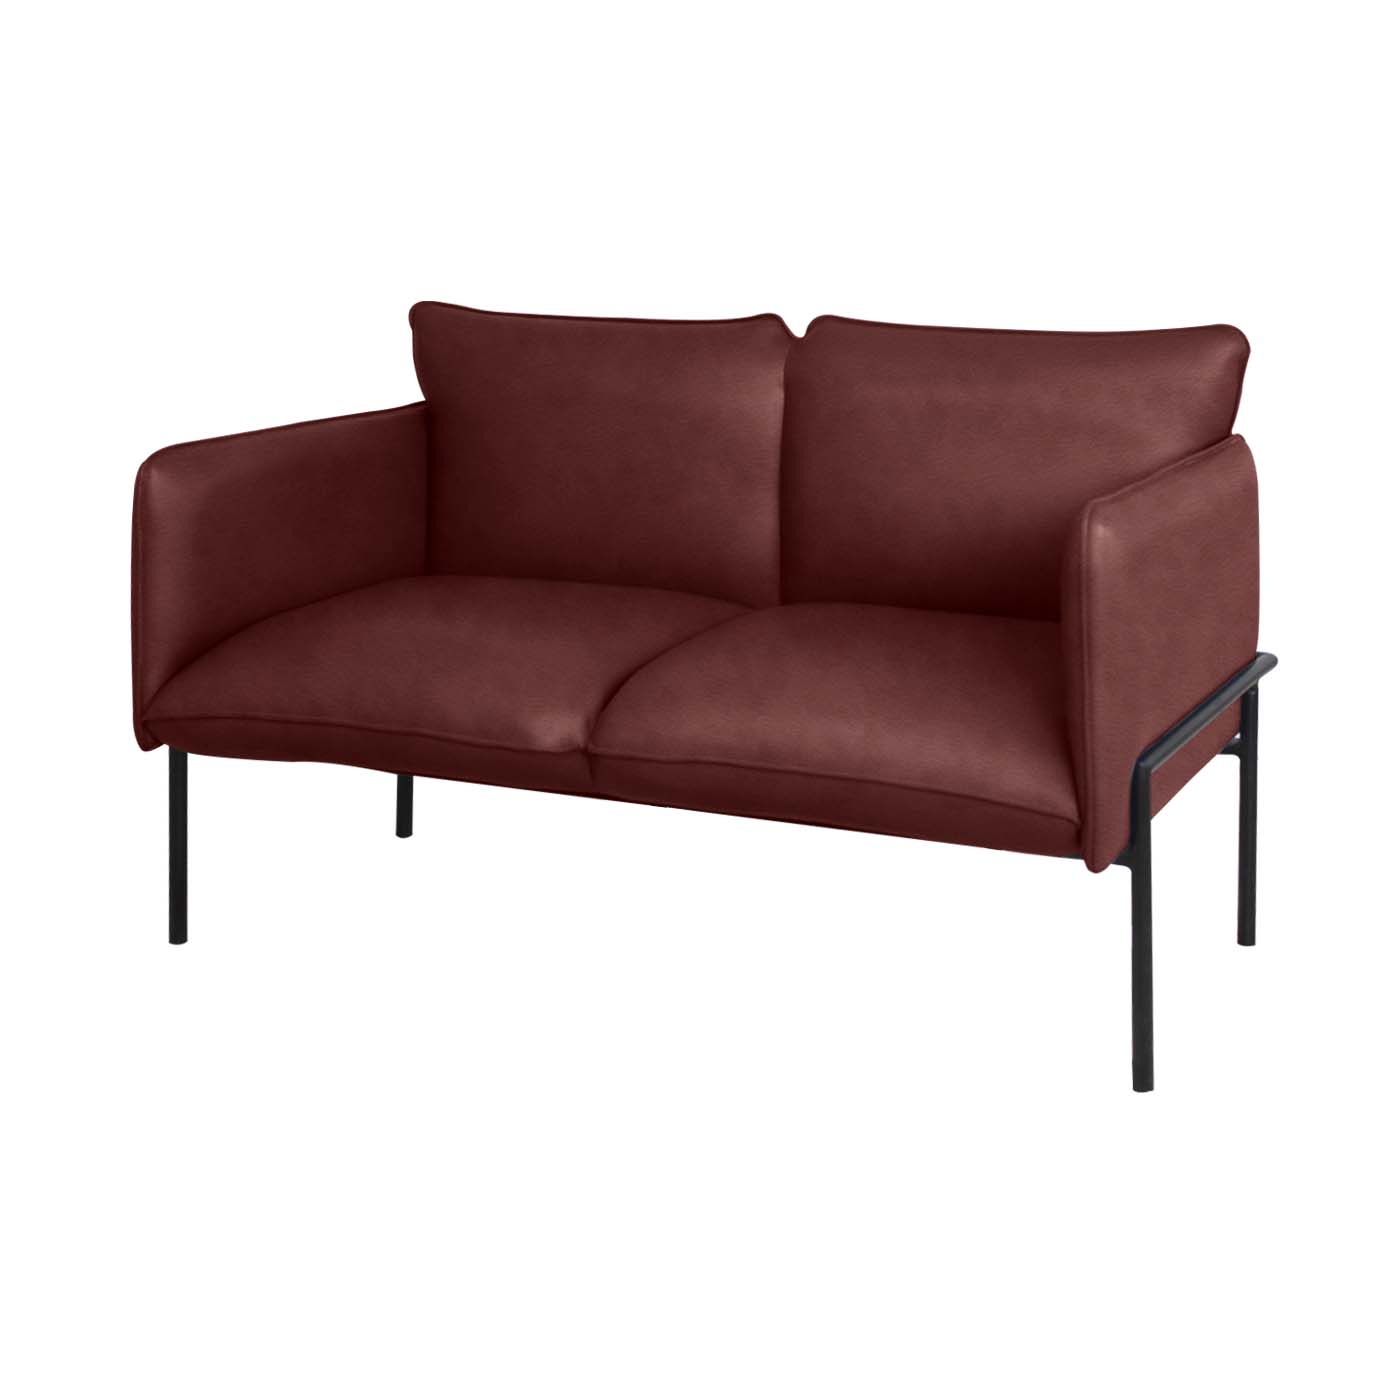 Dessau Faux Leather Double Sofa